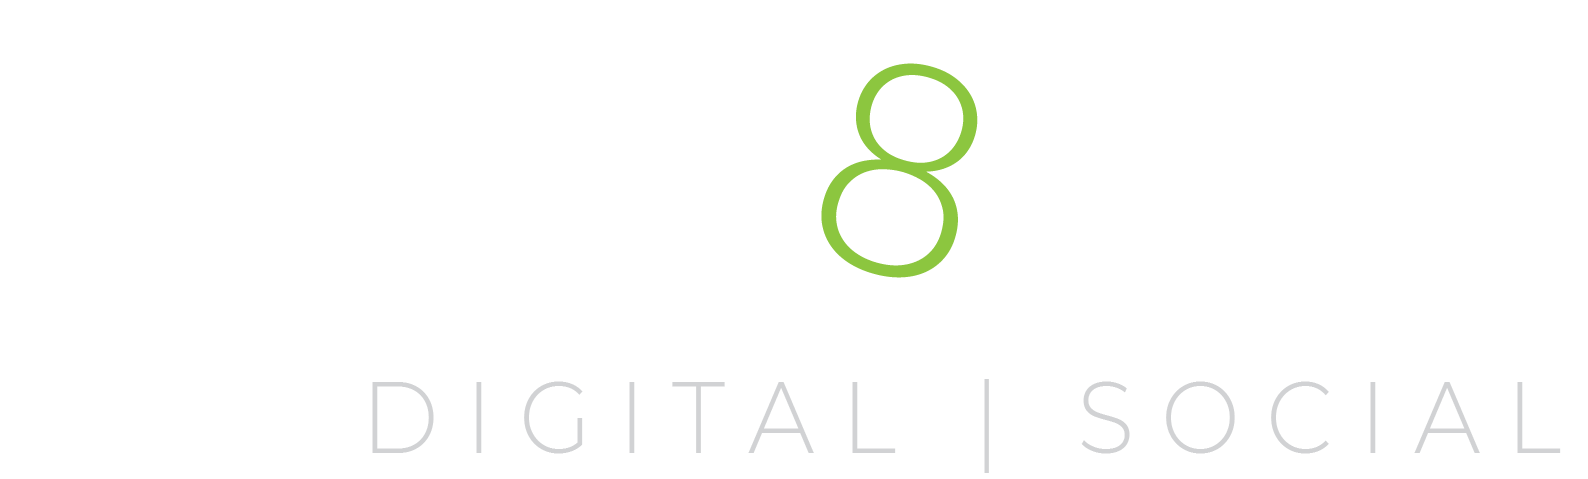 MeD8 Media